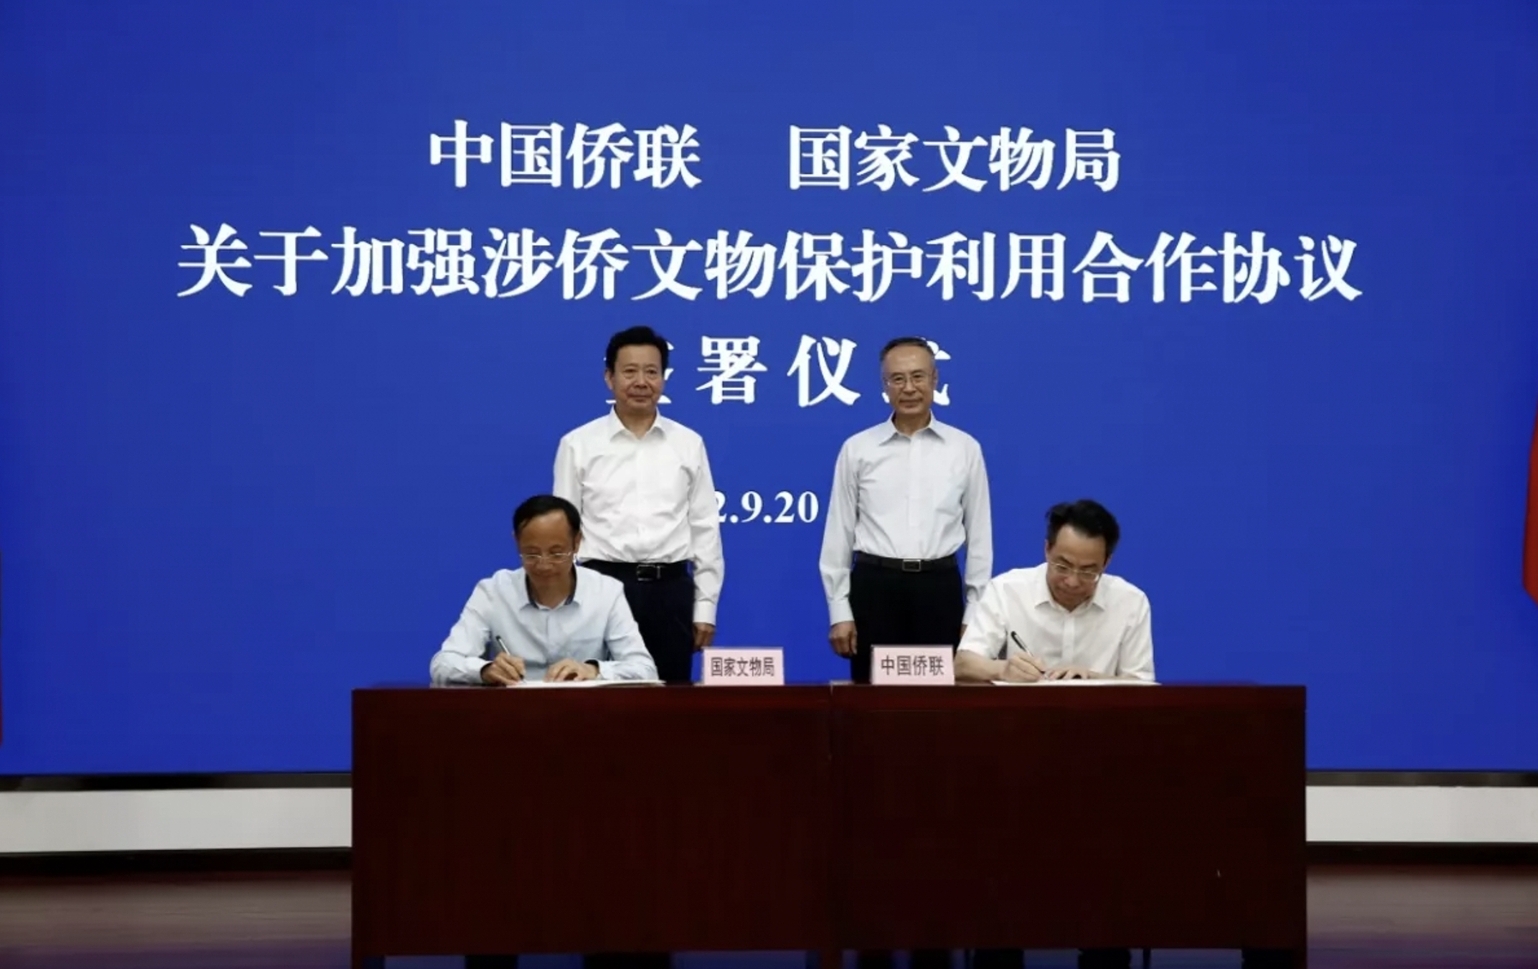 中国侨联与国家文物局签署合作协议 加强涉侨文物保护利用